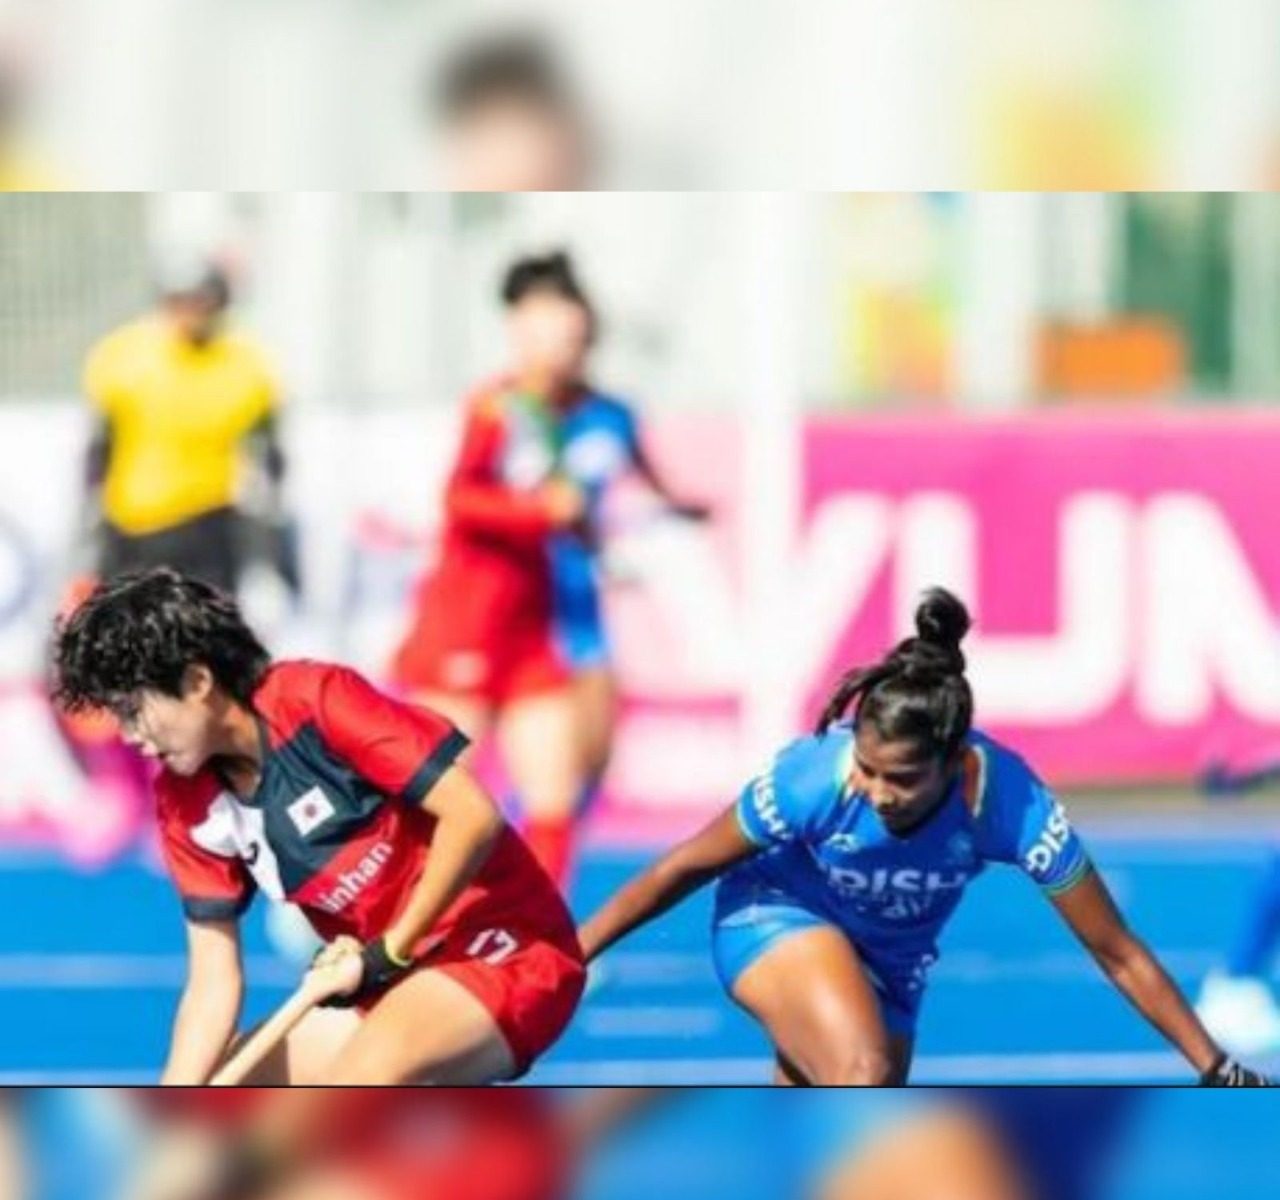 Women's Junior World Cup: ਦੱਖਣੀ ਅਫਰੀਕਾ ਦੇ ਪੋਚੇਫਸਟਰੂਮ 'ਚ ਖੇਡੇ ਜਾ ਰਹੇ ਮਹਿਲਾ ਜੂਨੀਅਰ ਹਾਕੀ ਵਿਸ਼ਵ ਕੱਪ (Women’s Junior Hockey World Cup) 'ਚ ਭਾਰਤੀ ਮਹਿਲਾ ਟੀਮ ਦਾ ਅਜੇਤੂ ਸਫਰ ਜਾਰੀ ਹੈ। 8 ਅਪ੍ਰੈਲ ਨੂੰ ਖੇਡੇ ਗਏ ਕੁਆਰਟਰ ਫਾਈਨਲ ਮੈਚ 'ਚ ਭਾਰਤੀ ਟੀਮ ਨੇ ਦੱਖਣੀ ਕੋਰੀਆ (india Beat south korea) ਦੇ ਖਿਲਾਫ ਹਾਕੀ ਖੇਡ ਕੇ ਸੈਮੀਫਾਈਨਲ 'ਚ ਜਗ੍ਹਾ ਬਣਾਈ ਸੀ।